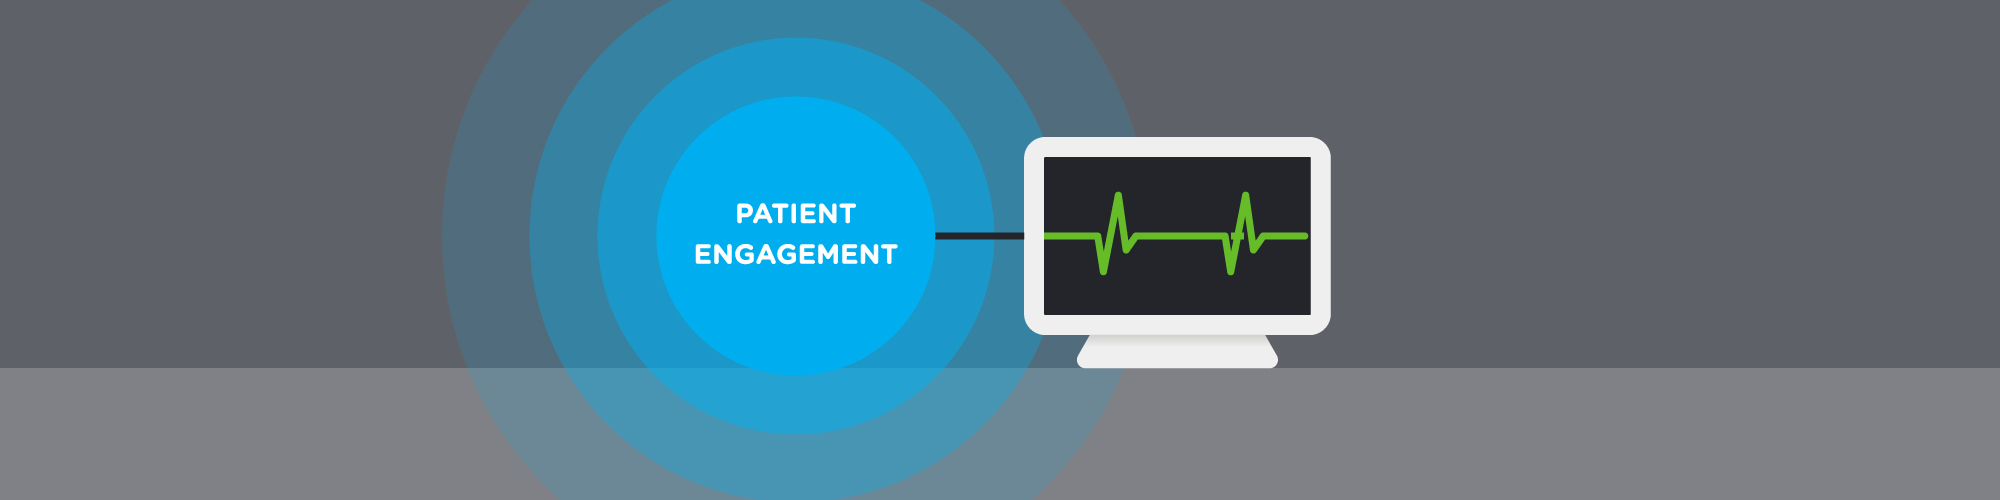 Patient-centric channel deployment